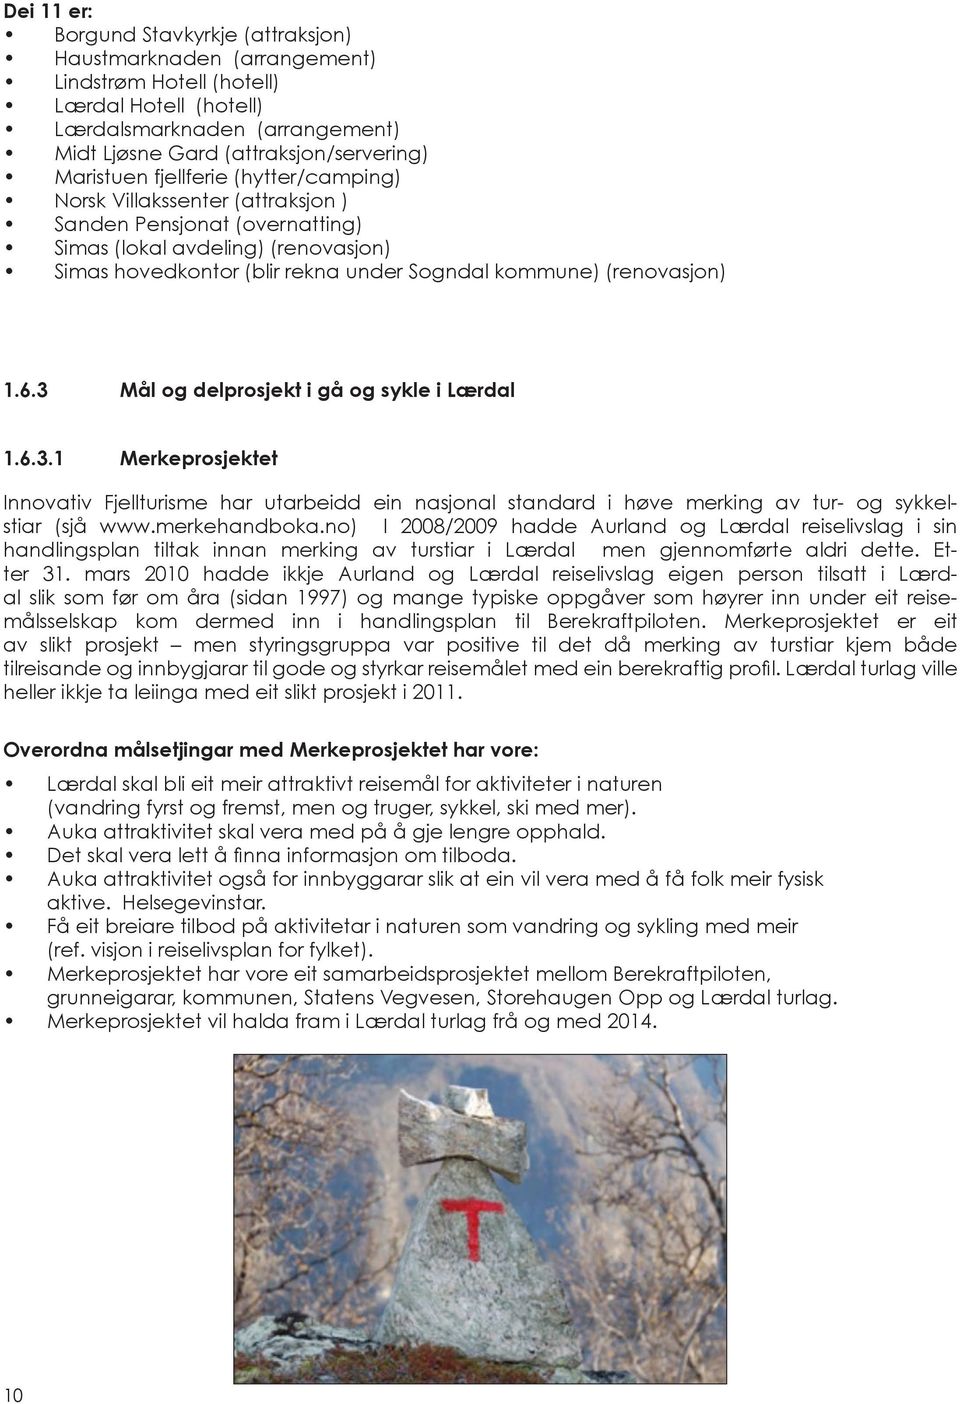 (renovasjon) 1.6.3 Mål og delprosjekt i gå og sykle i Lærdal 1.6.3.1 Merkeprosjektet Innovativ Fjellturisme har utarbeidd ein nasjonal standard i høve merking av tur- og sykkelstiar (sjå www.